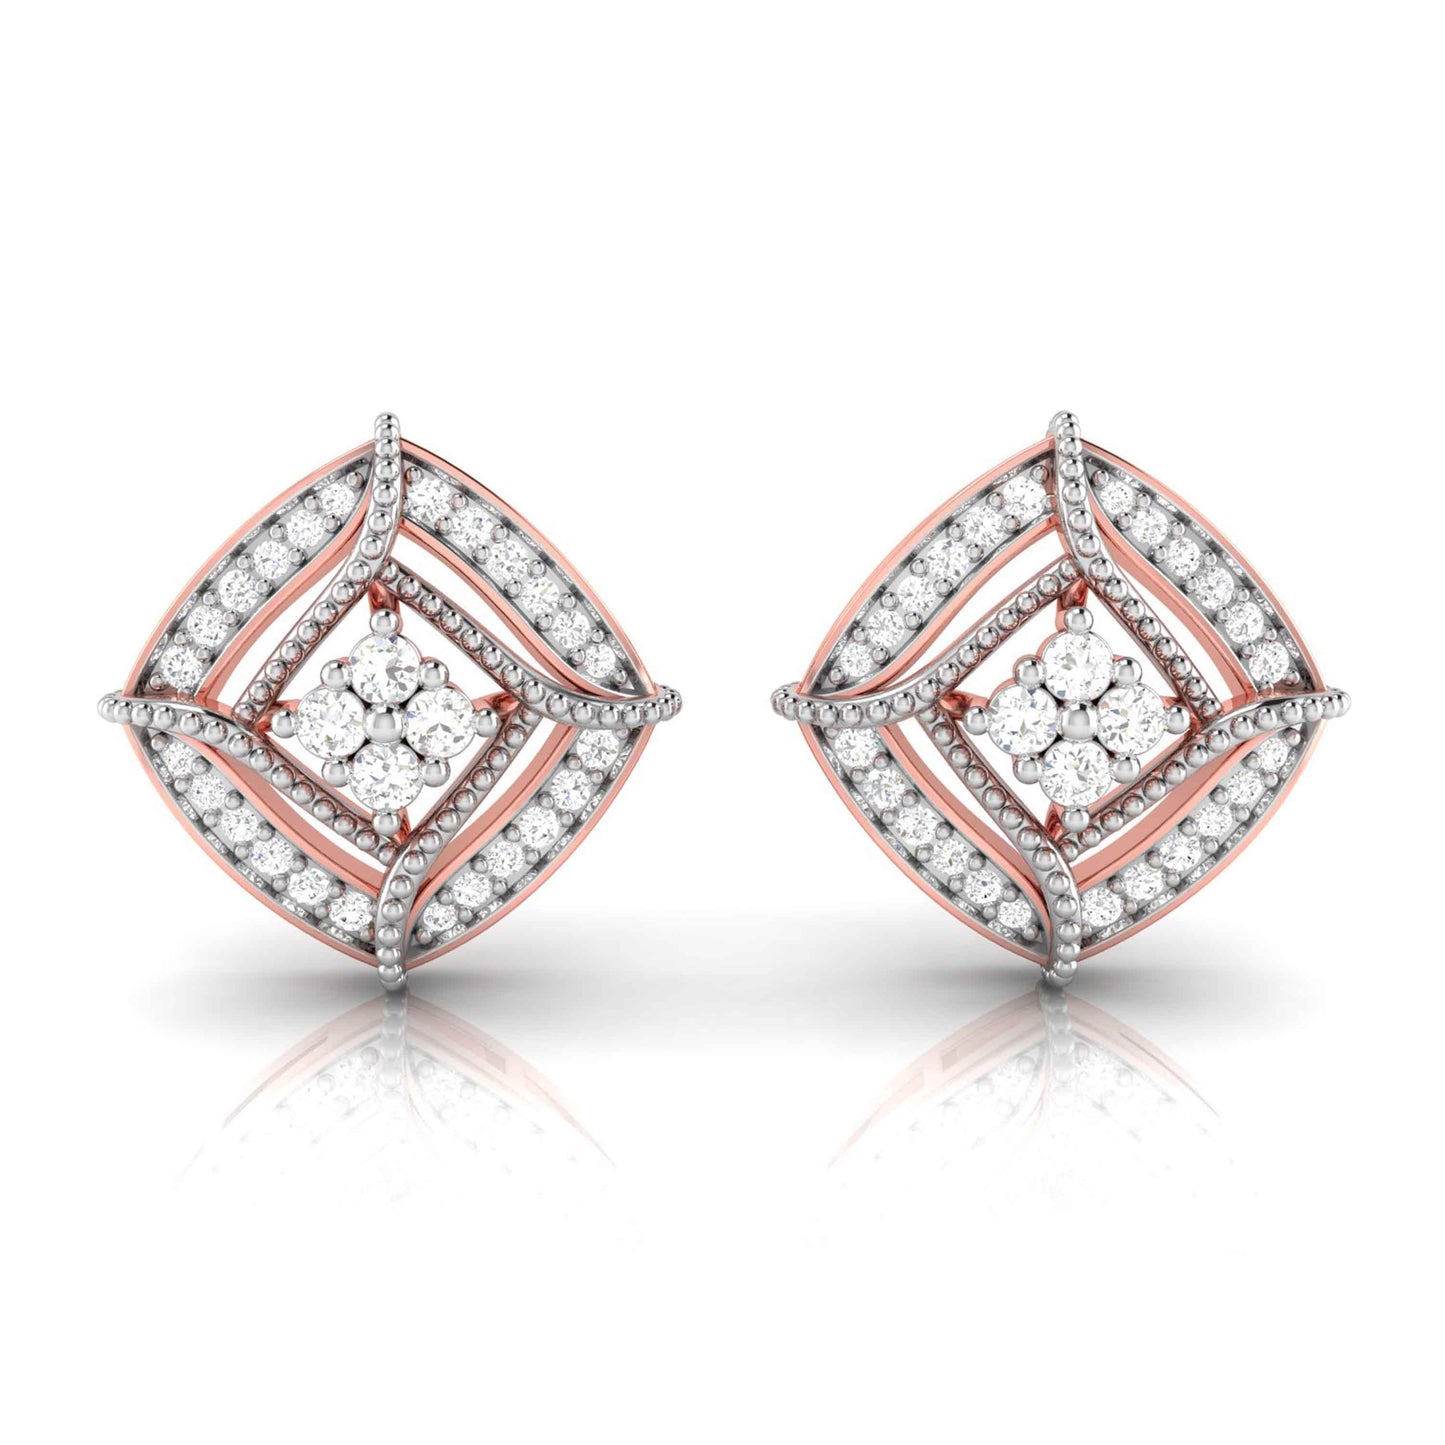 Small earrings design Dere Lab Grown Diamond Earrings Fiona Diamonds